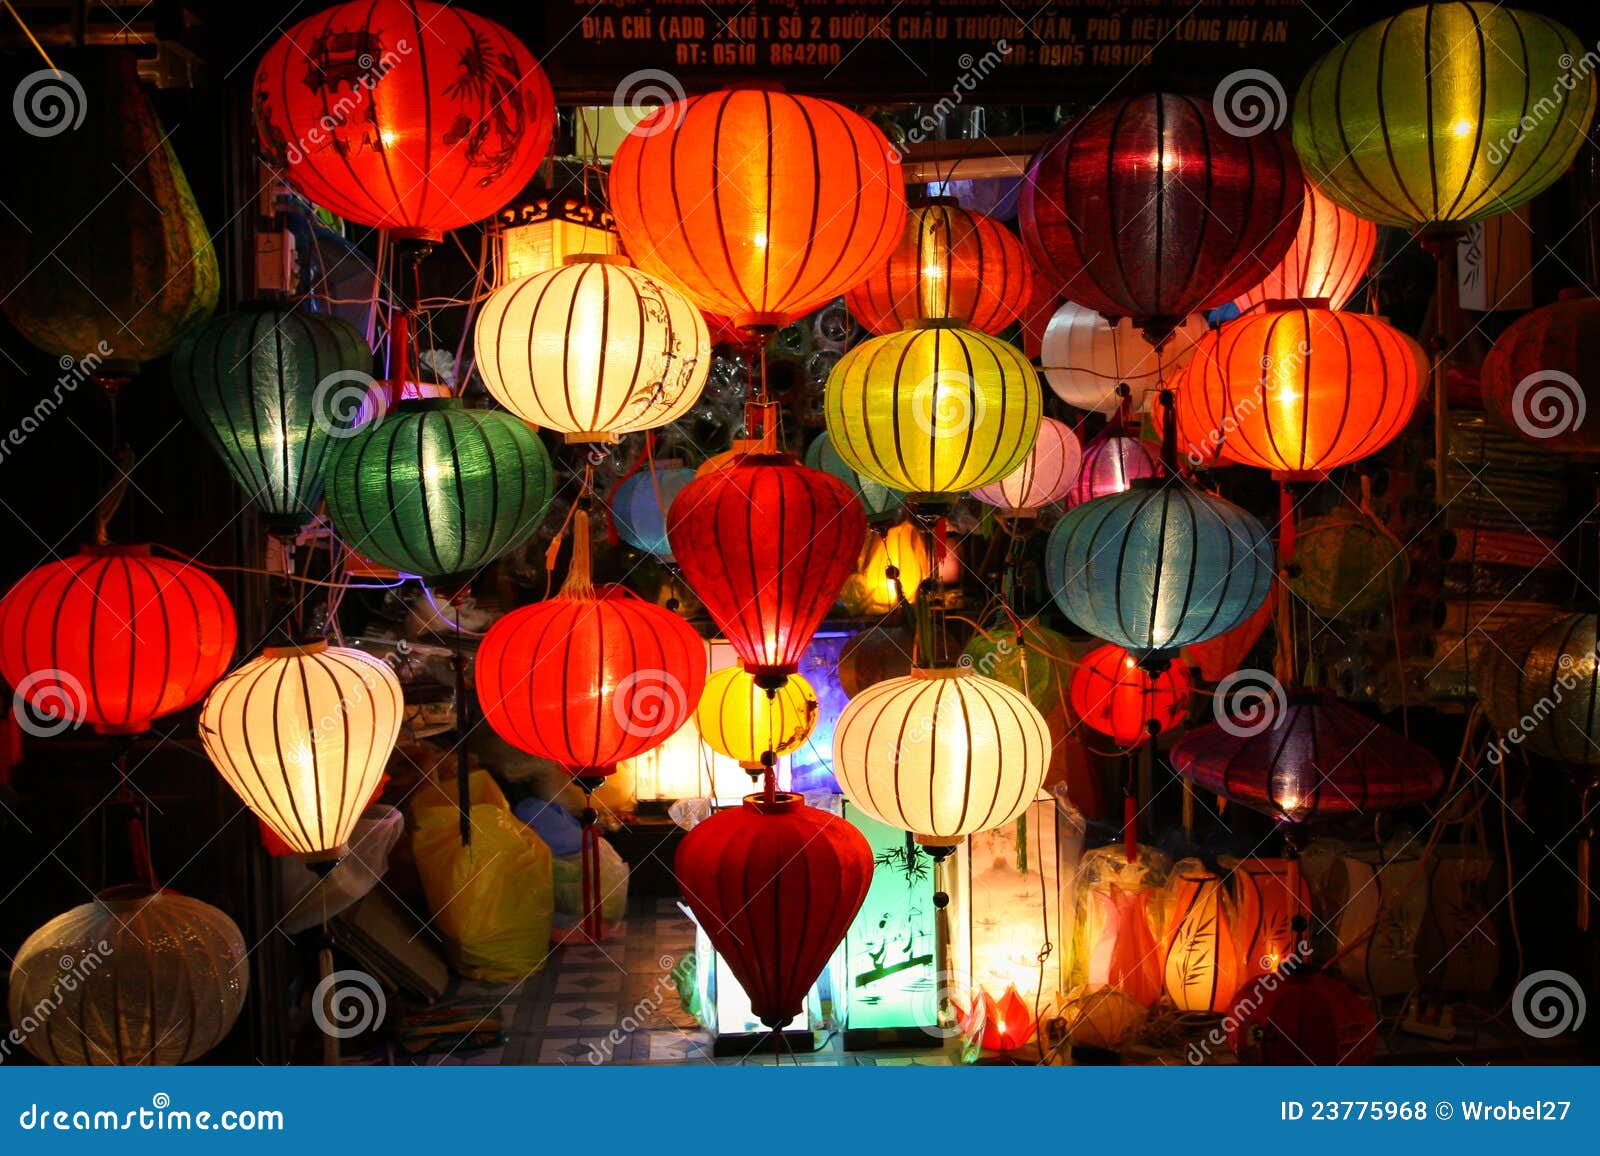 lanterns at market street,hoi an, vietnam